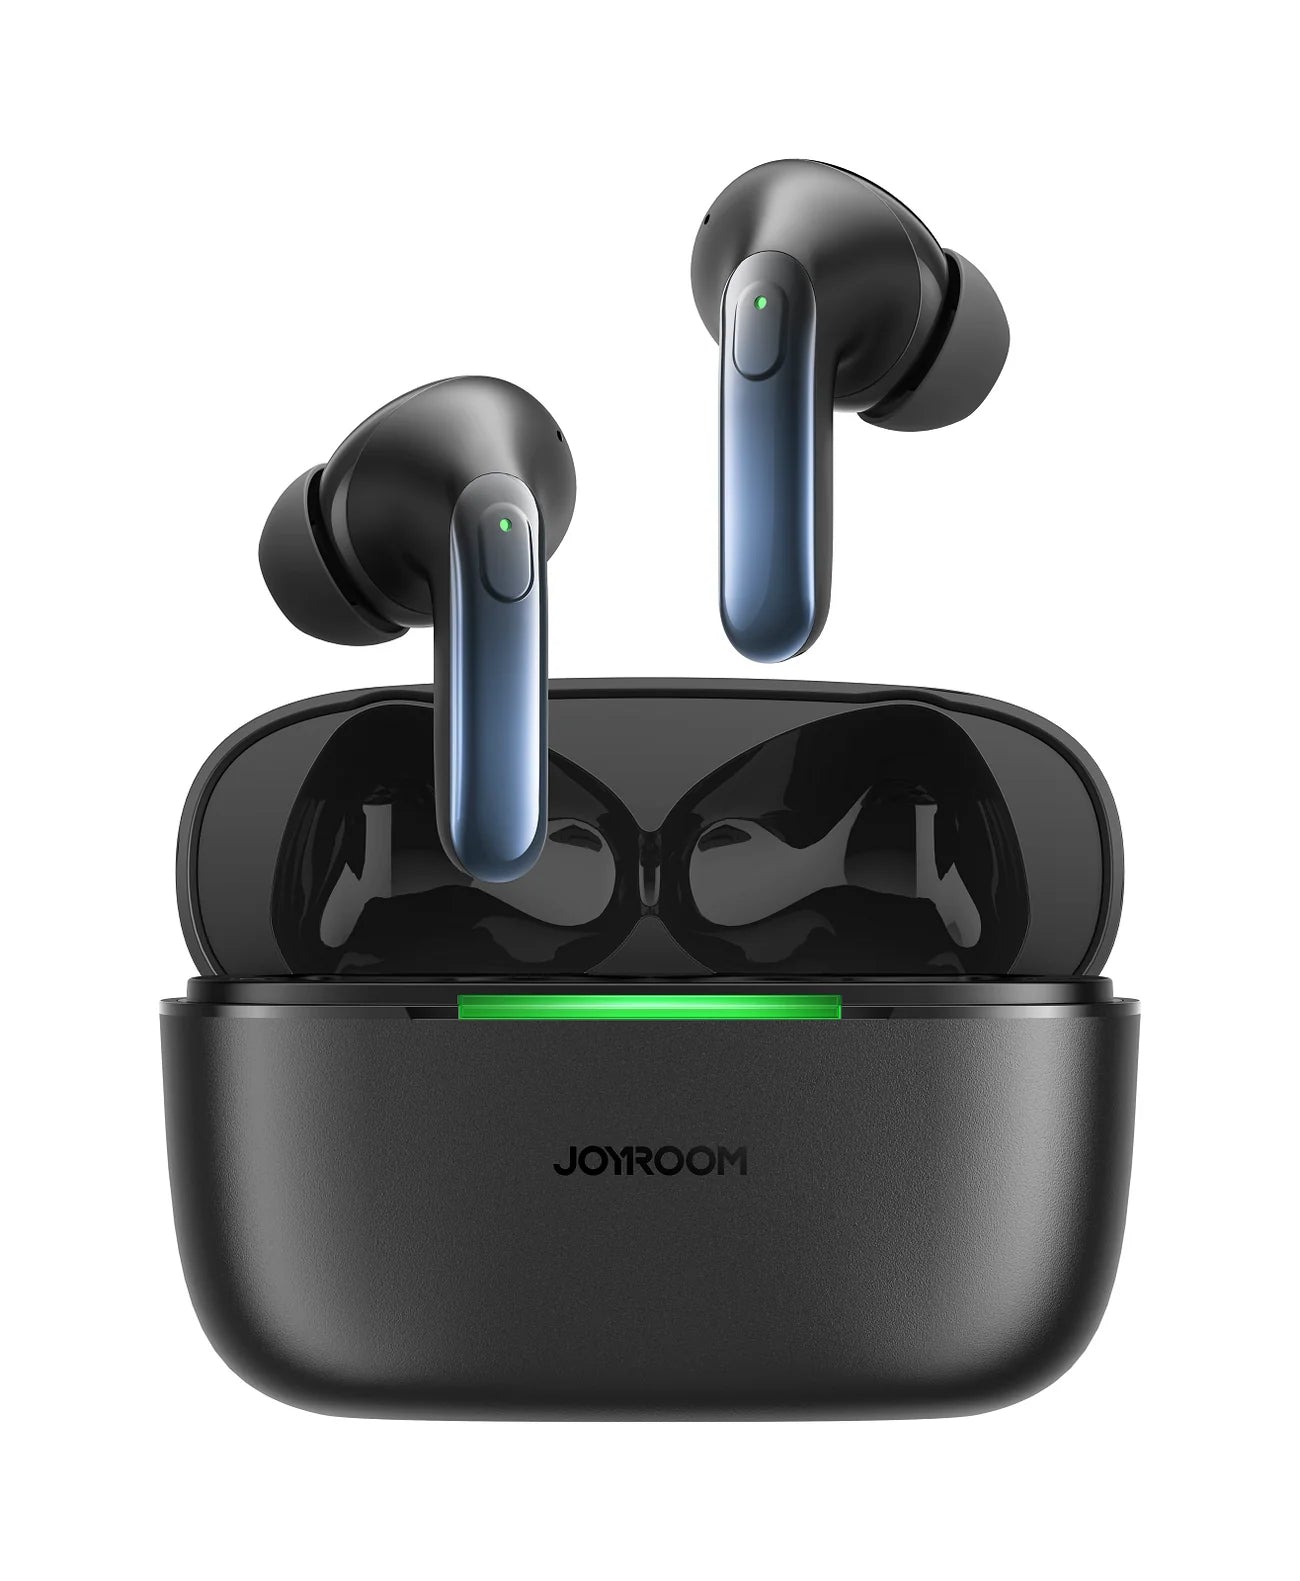 Joyroom Jbuds Series JR-BC1 True Wireless ANC Earbuds - Black